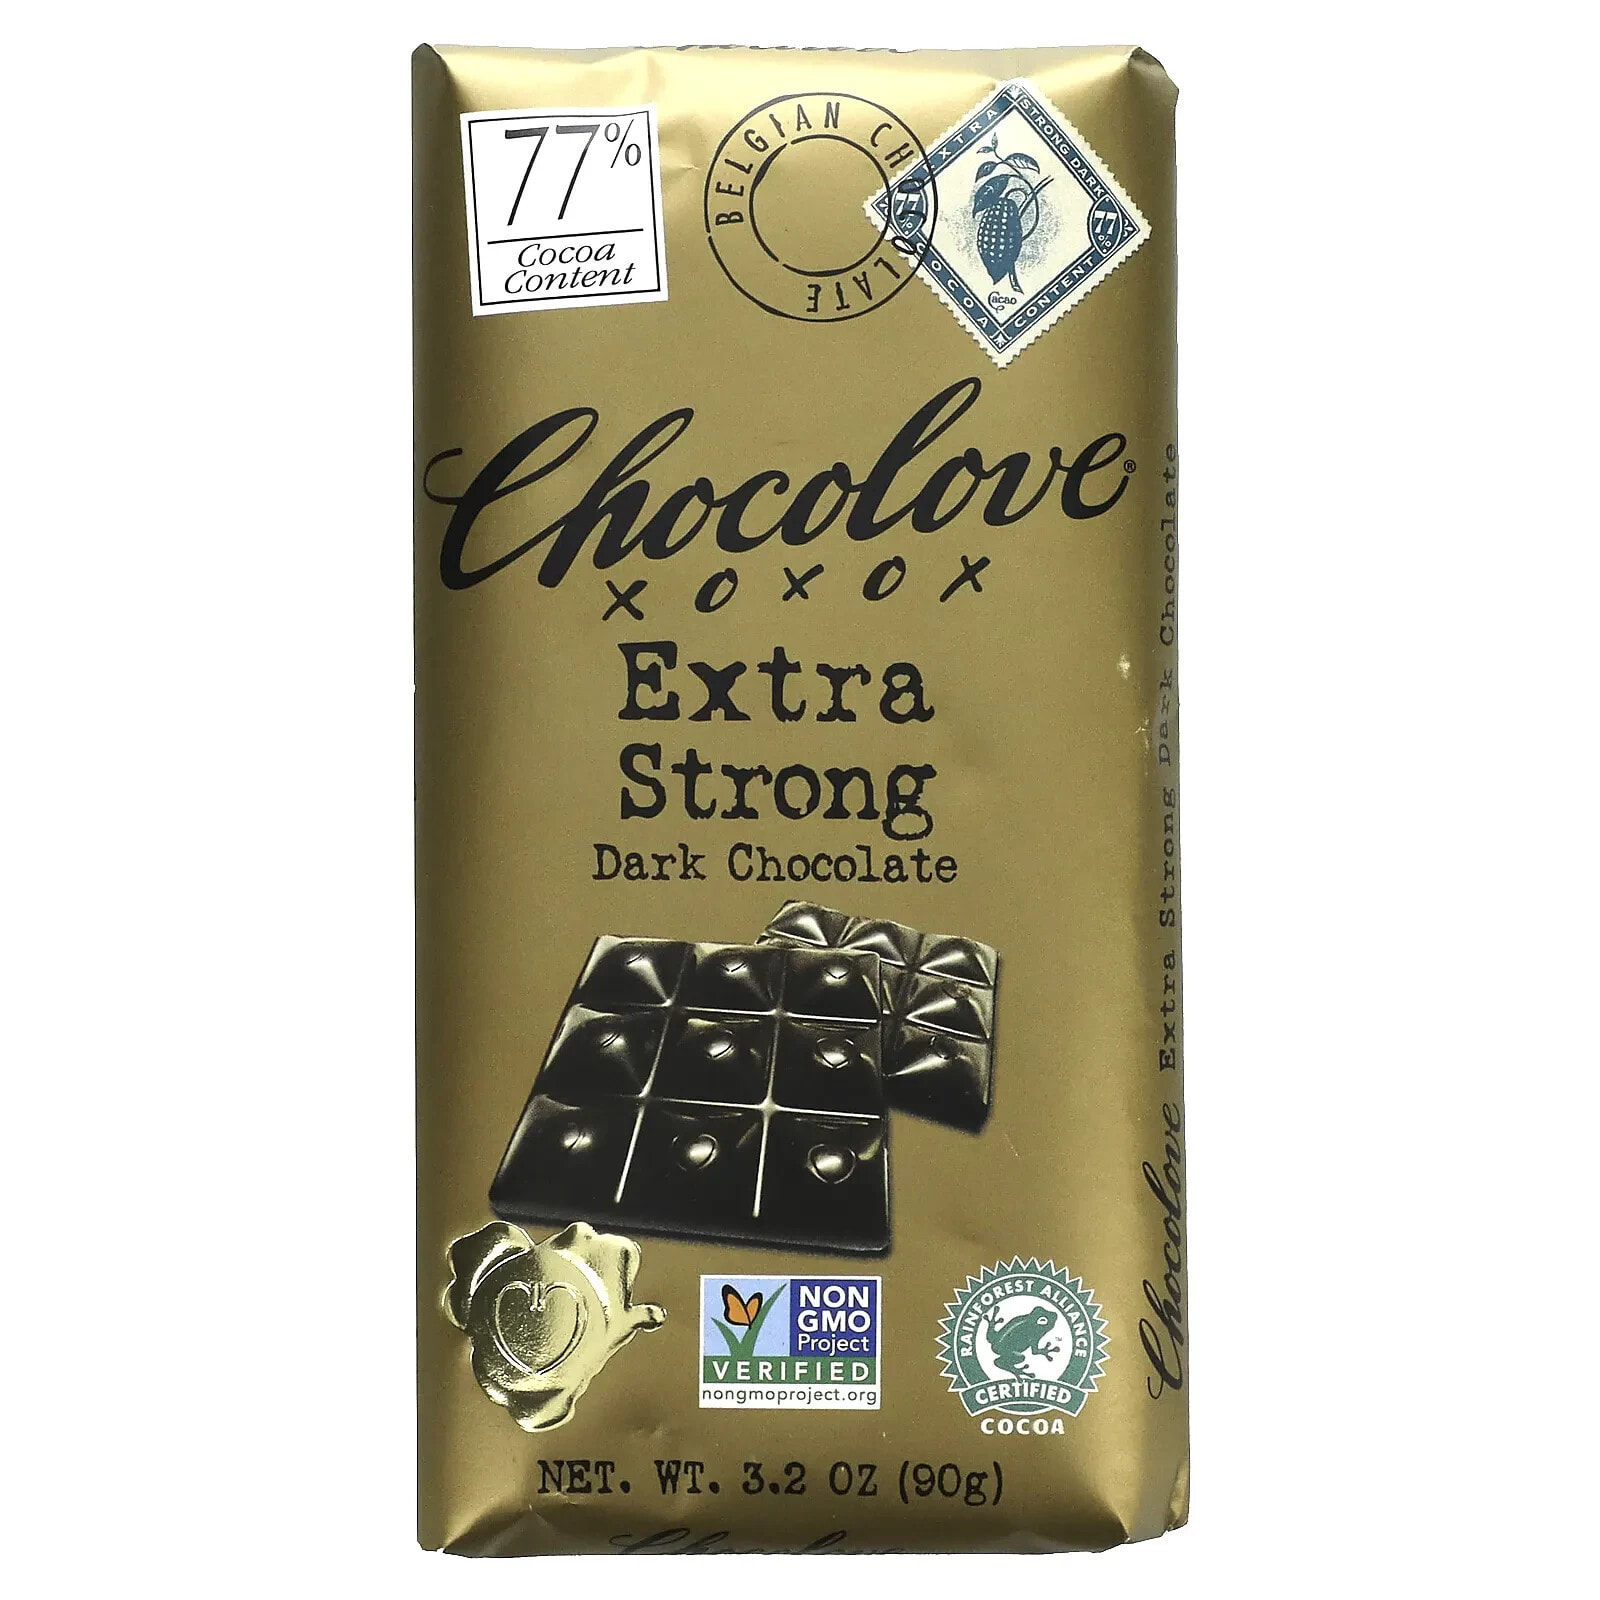 Chocolove, экстрагорький черный шоколад, 70% какао, 90 г (3,2 унции)